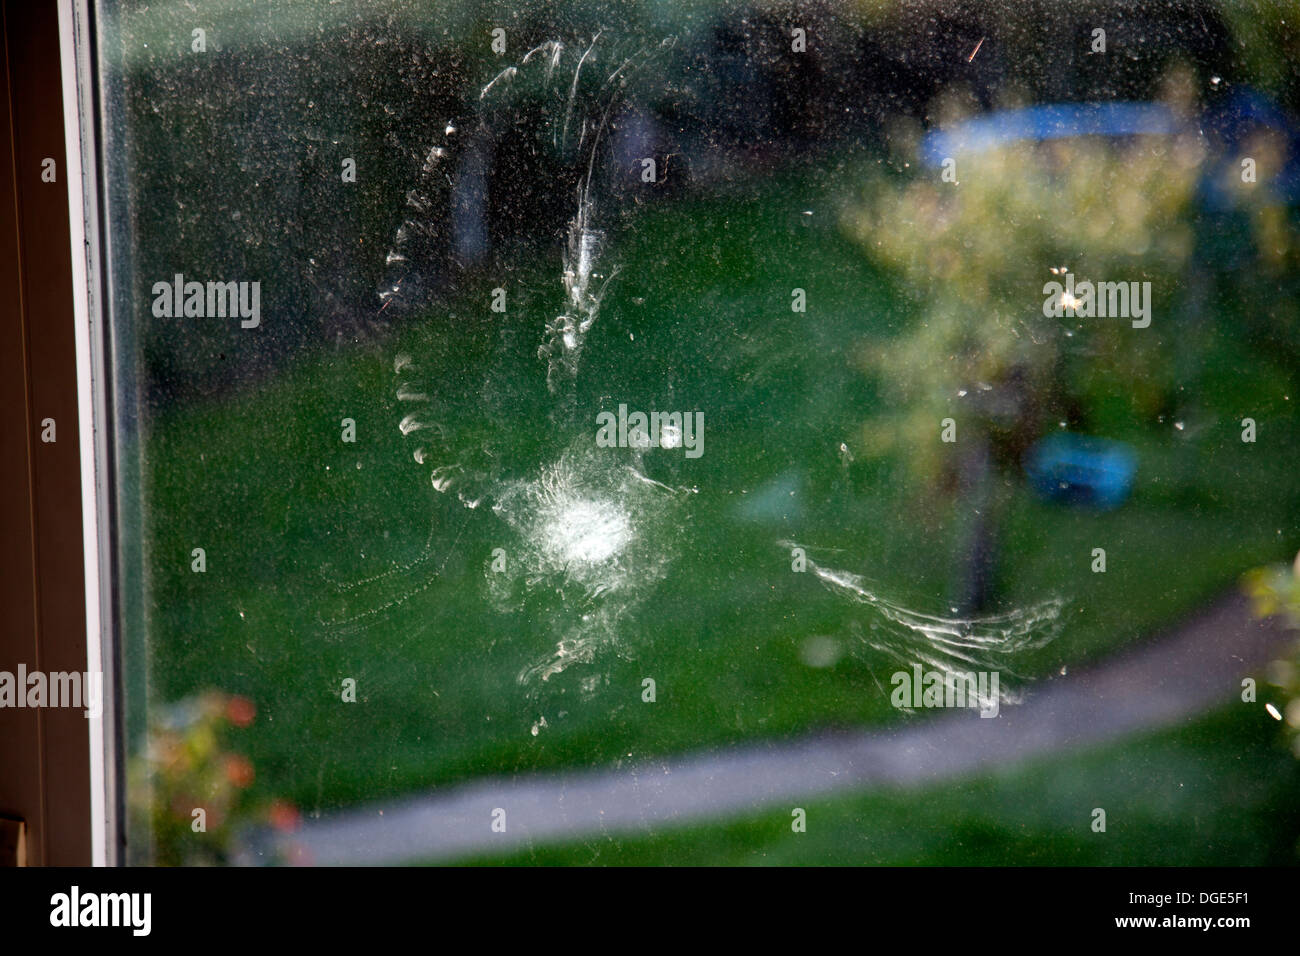 Bird strike prova a sinistra dietro, probabile una colomba pigeon, colpendo una finestra e lasciando un "feather polvere' imprint. Foto Stock